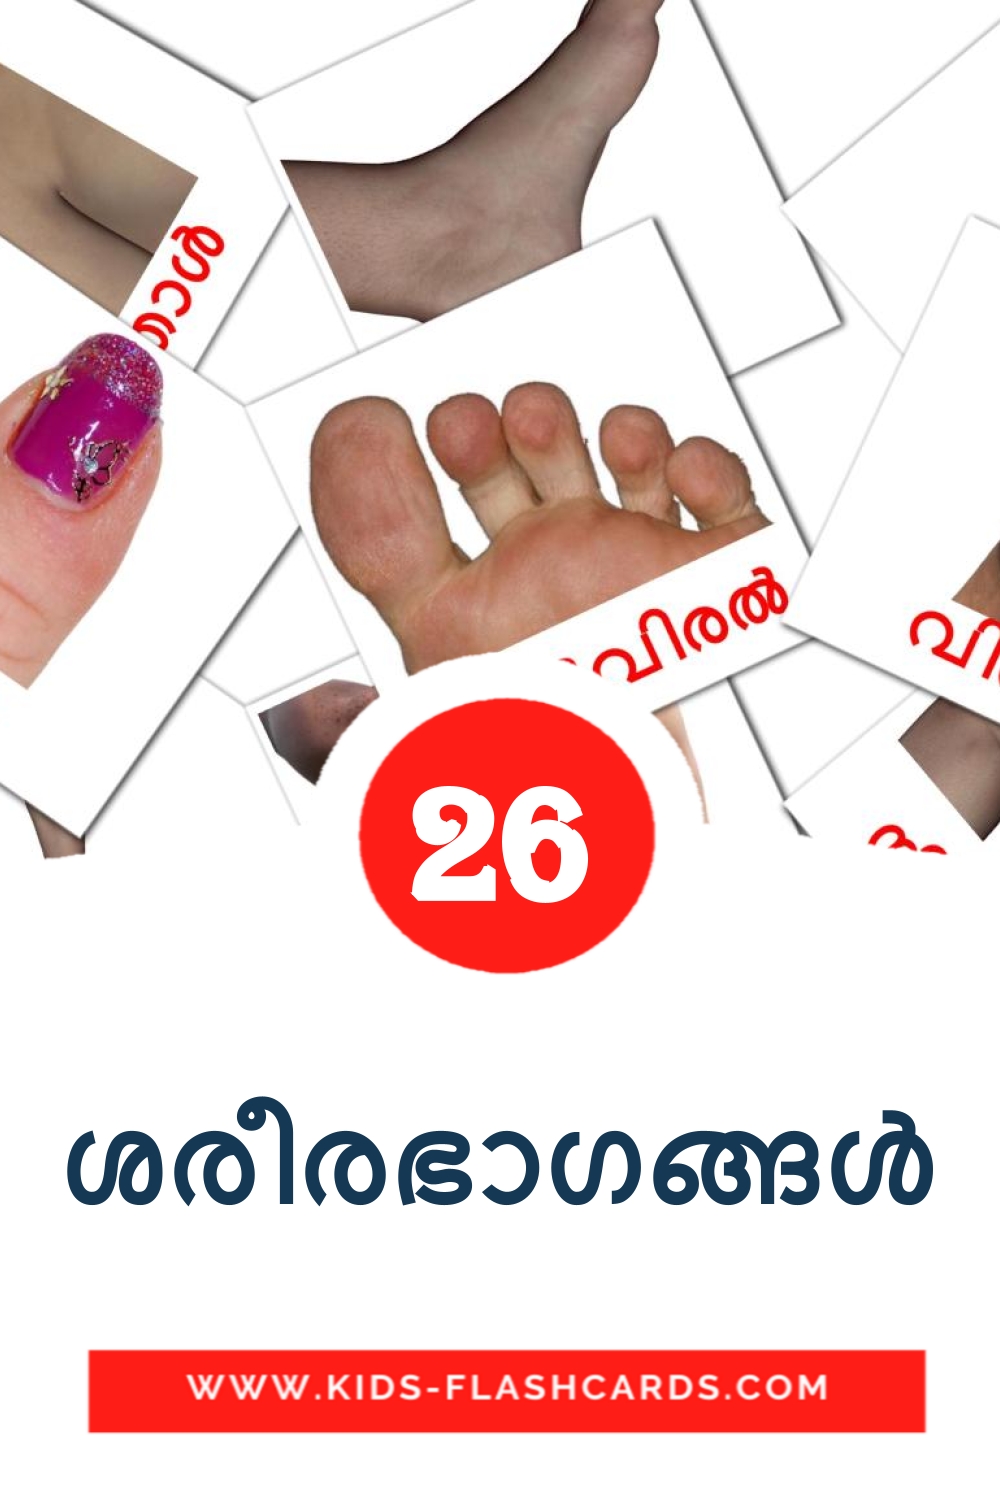 26 tarjetas didacticas de ശരീരഭാഗങ്ങൾ para el jardín de infancia en malayalam